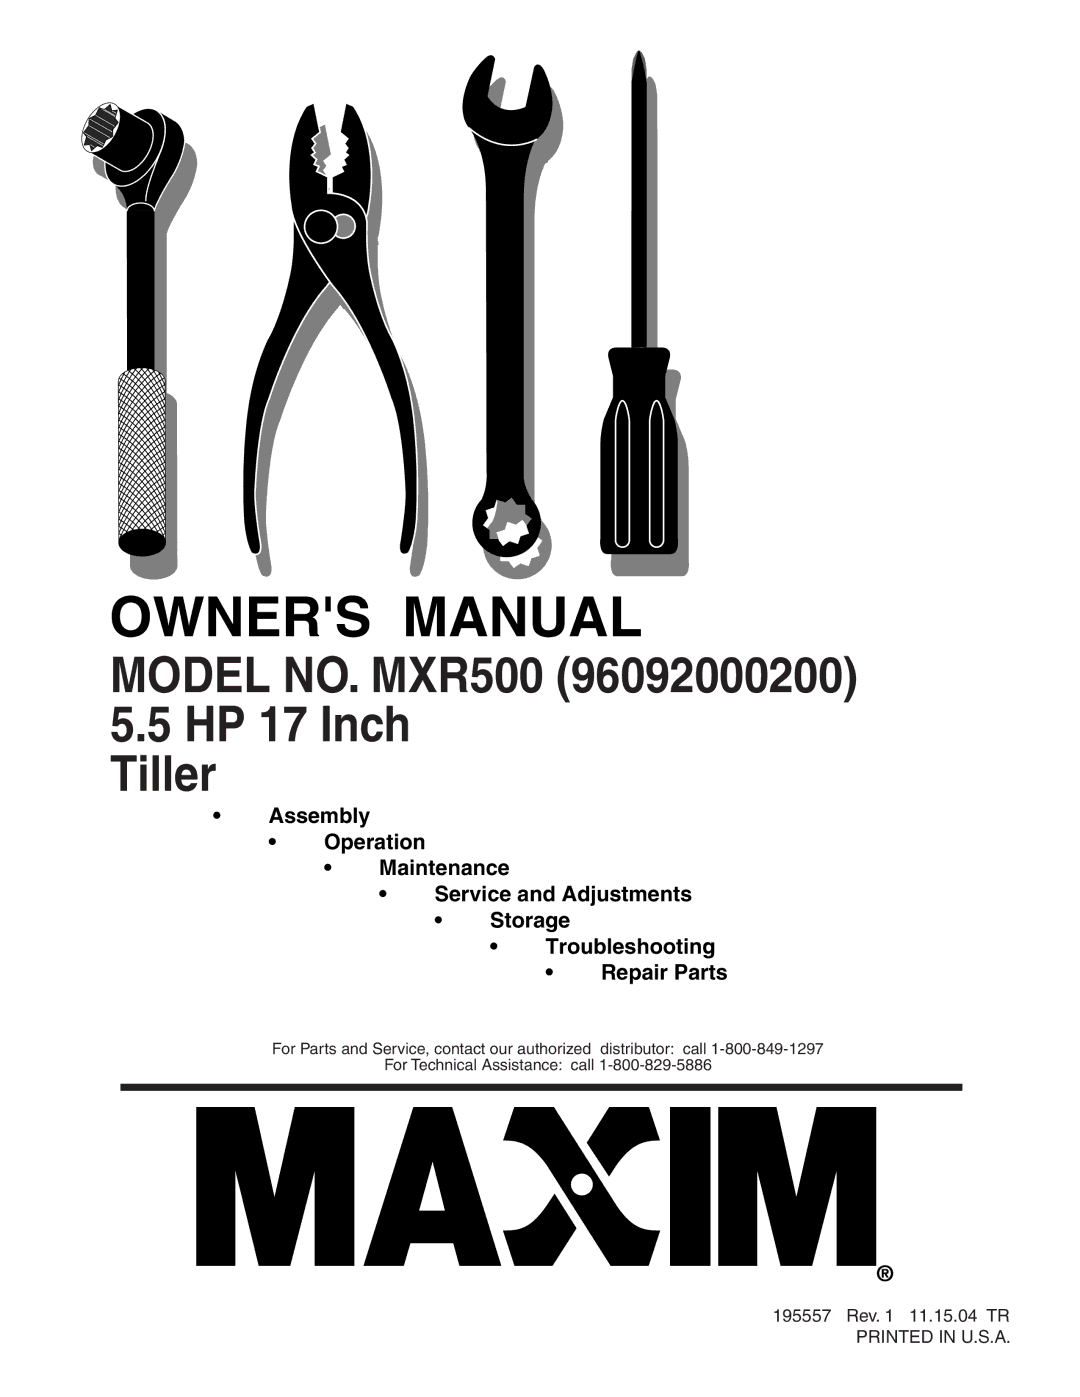 Maxim owner manual Model NO. MXR500 HP 17 Inch Tiller 